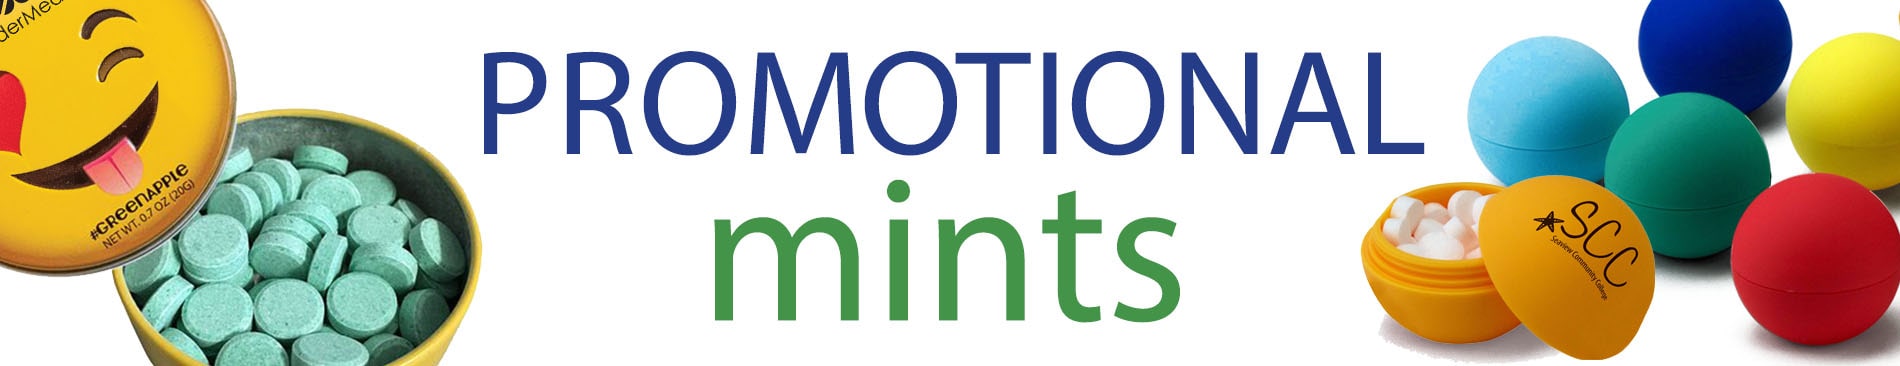 promotional mints